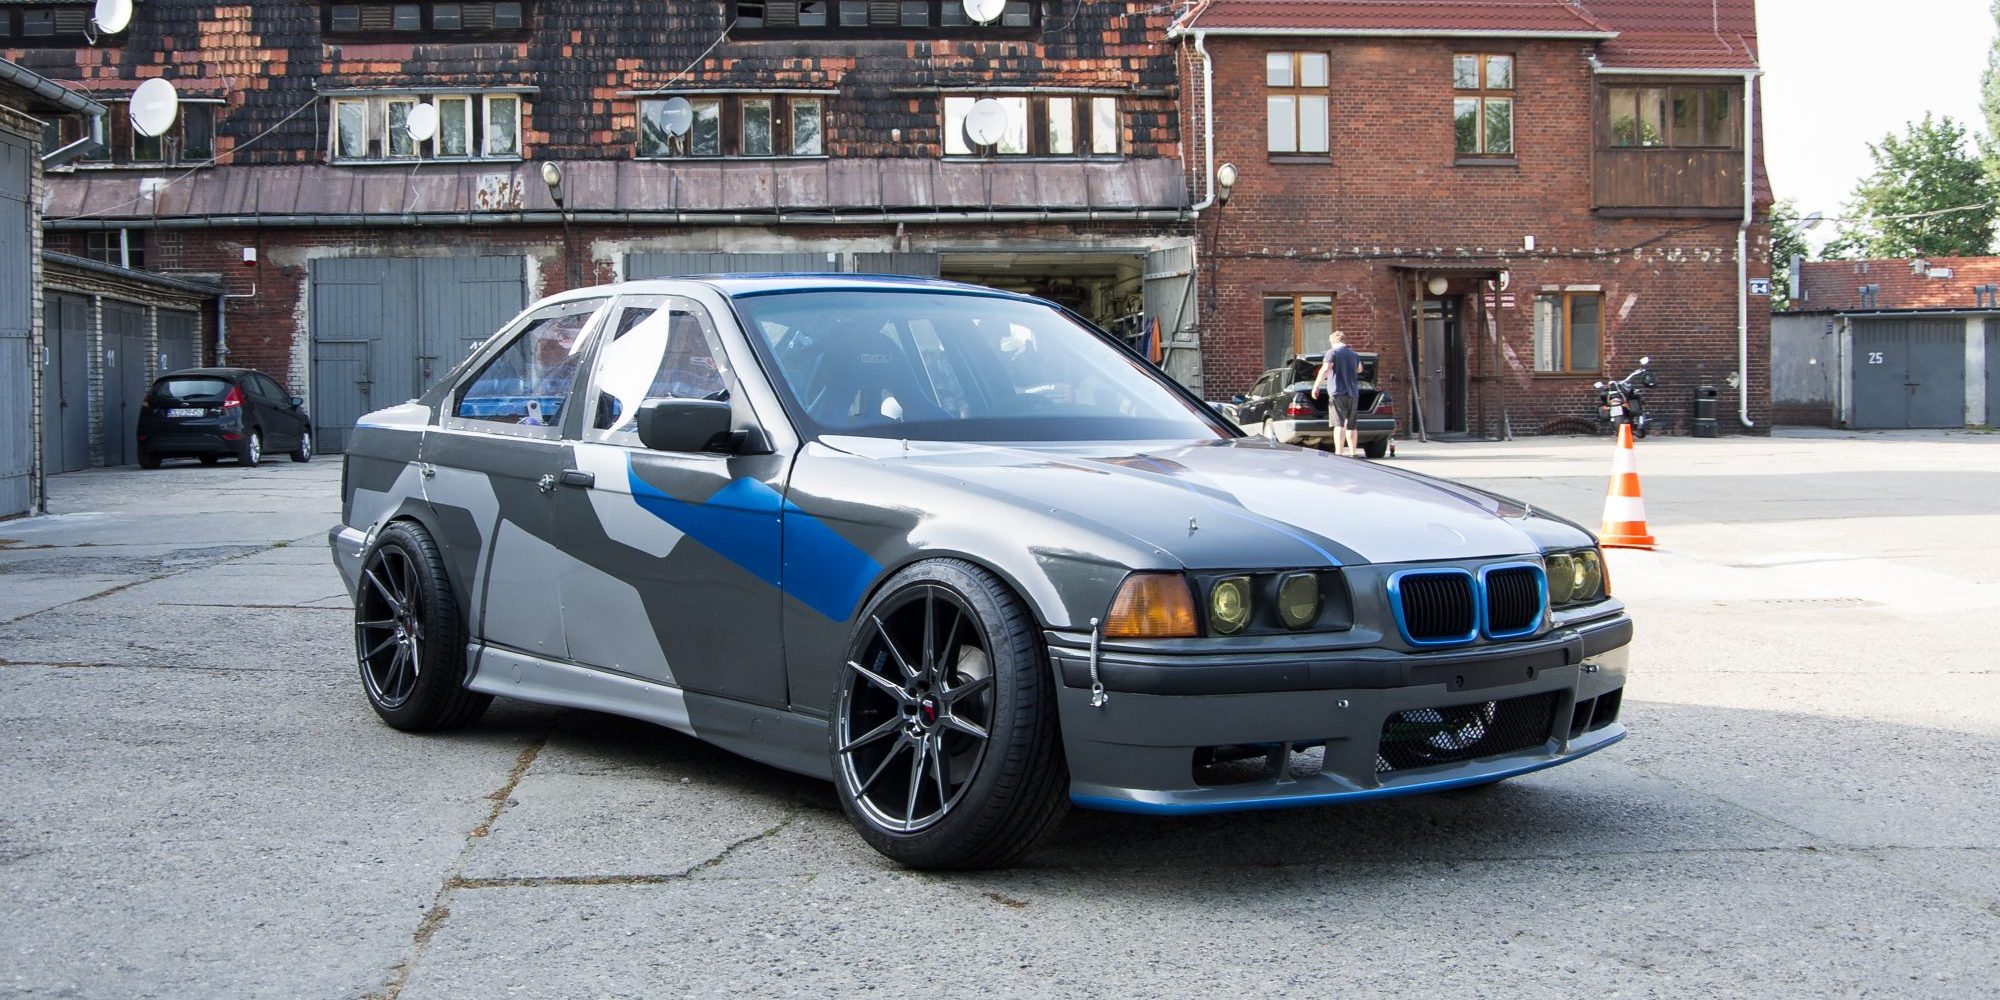 Polacy zbudowali elektryczne BMW E36. To samochód do driftu